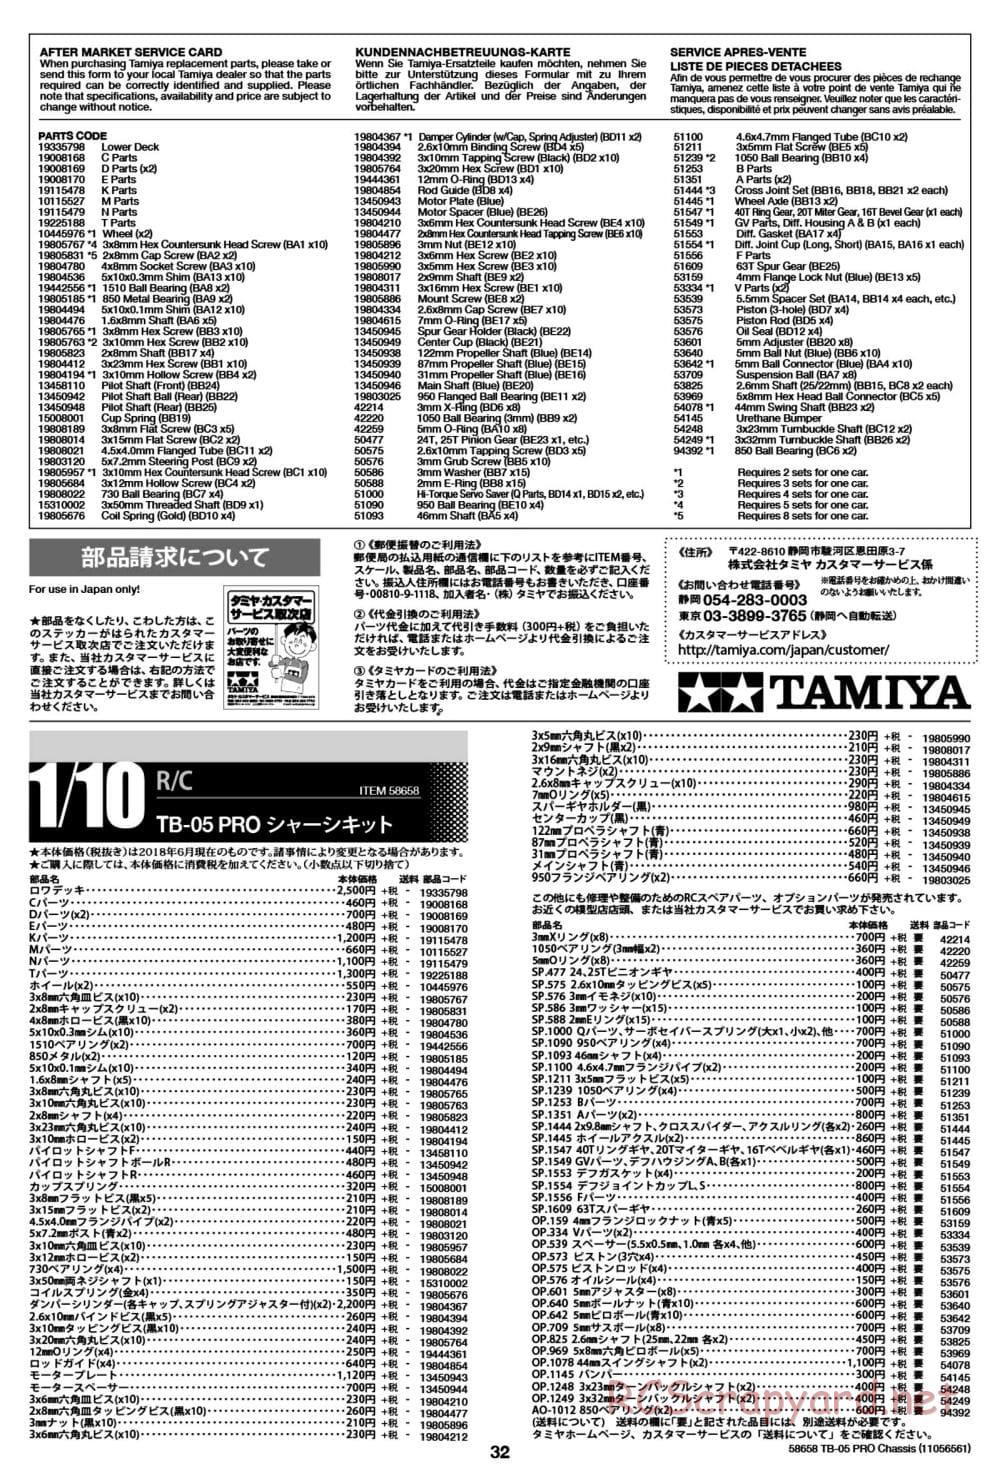 Tamiya - TB-05 Pro Chassis - Manual - Page 32